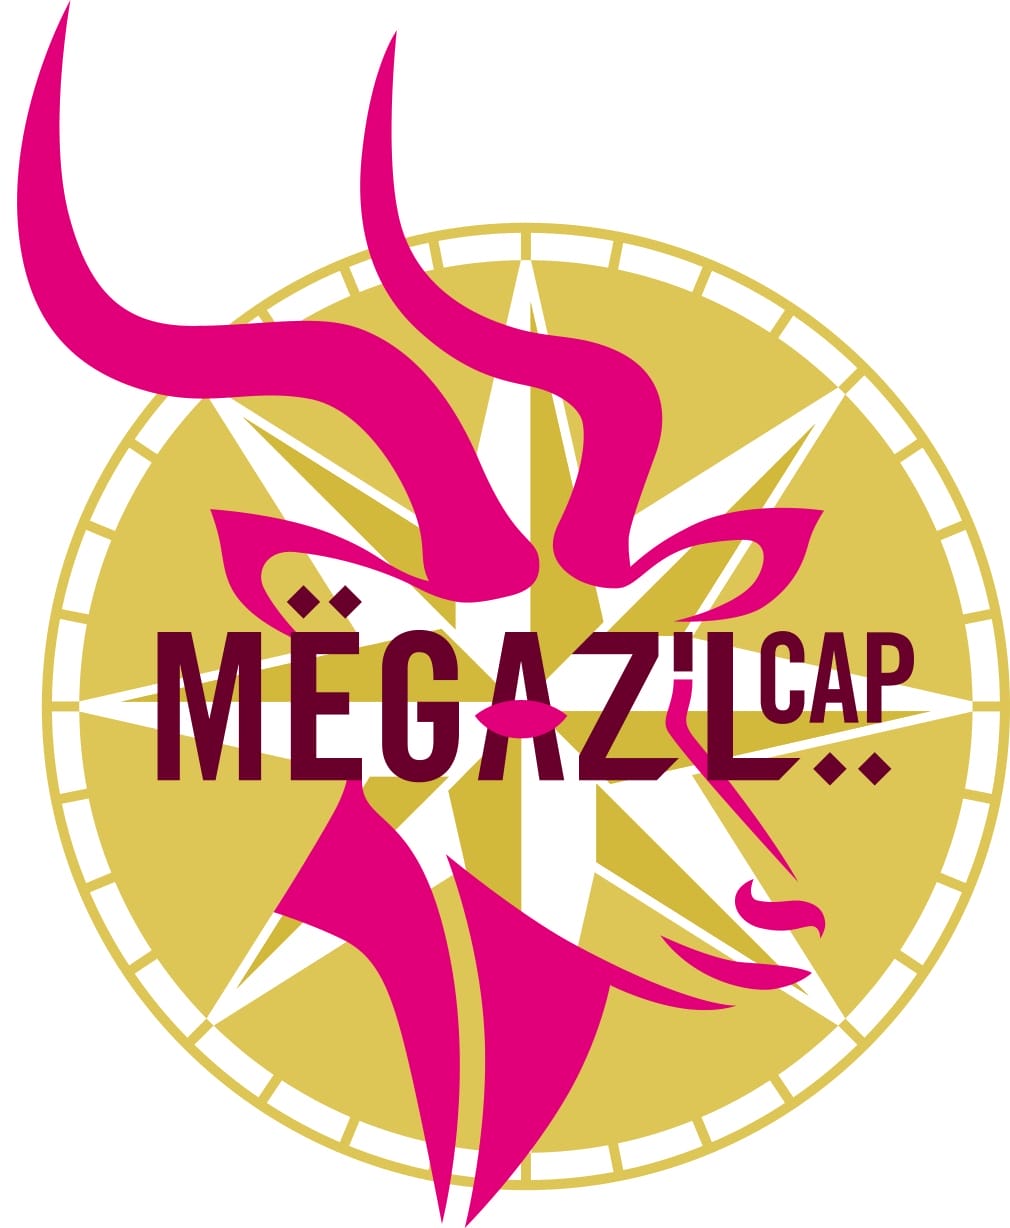 Montres et Tendance soutient Mega Z’L Cap